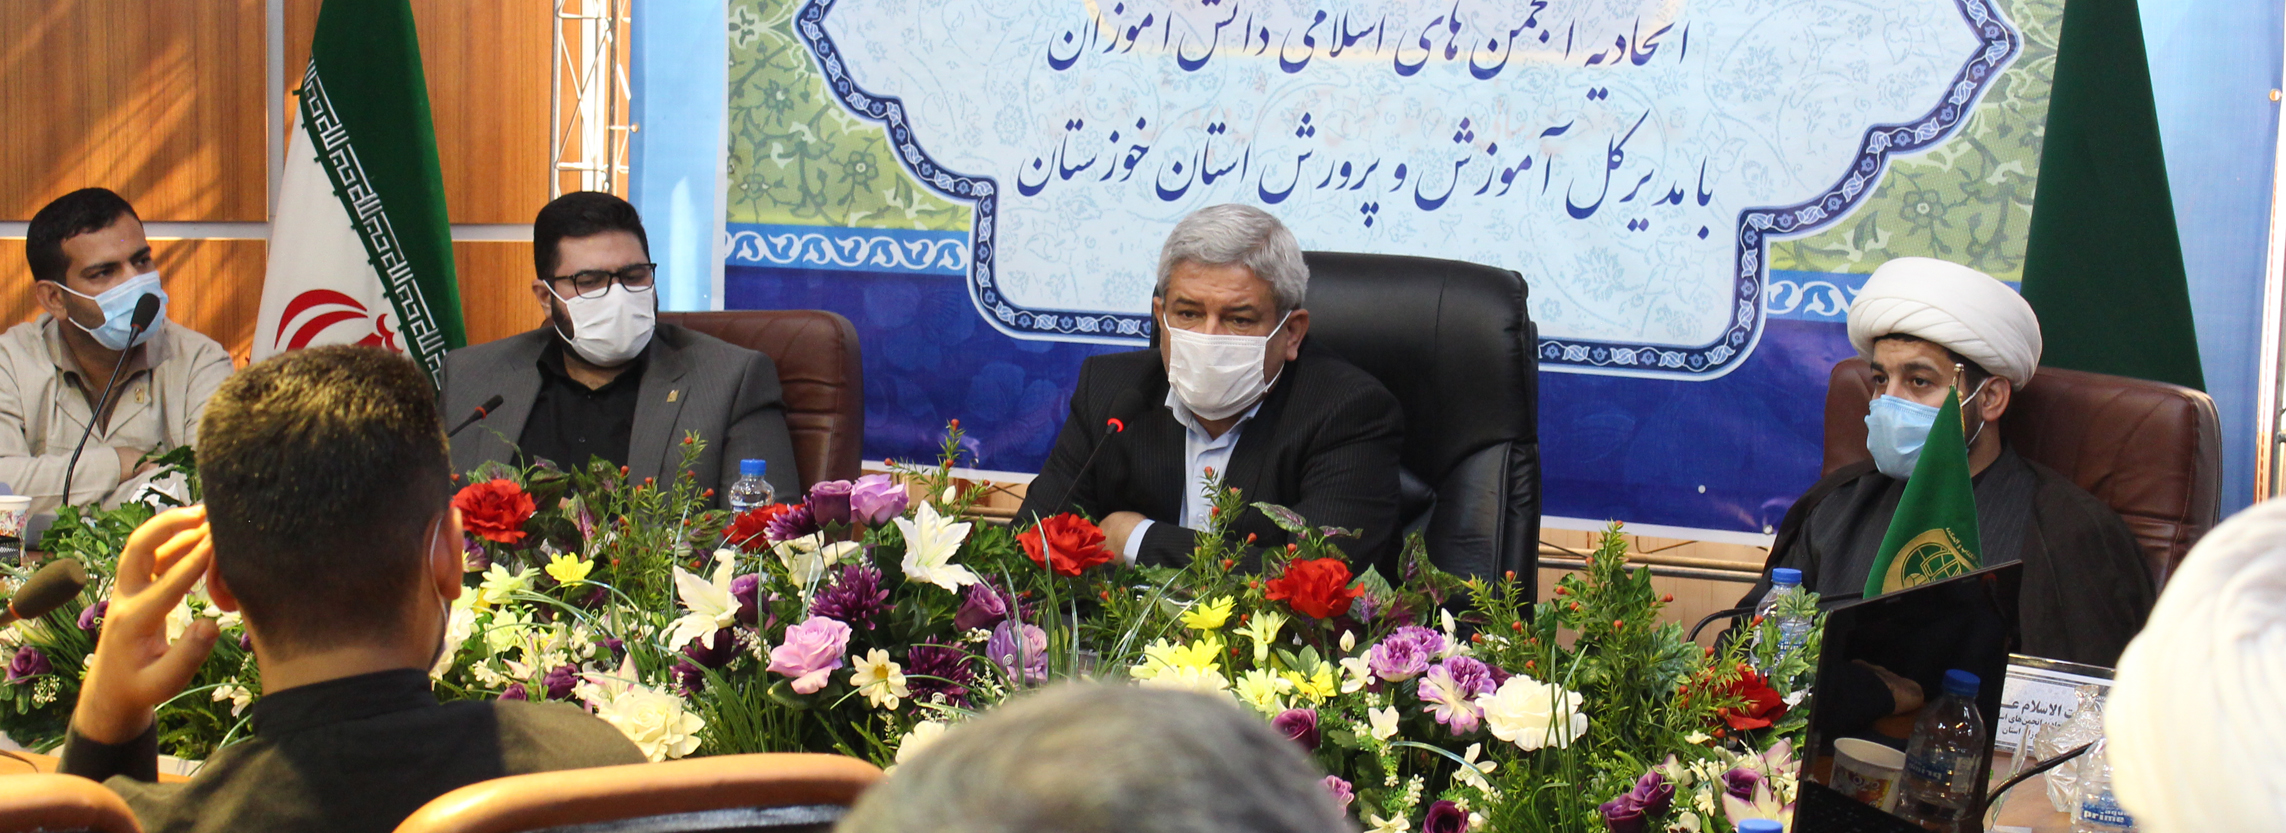 نشست صمیمانه کادر و مسئولین اتحادیه با مدیرکل آموزش و پرورش استان